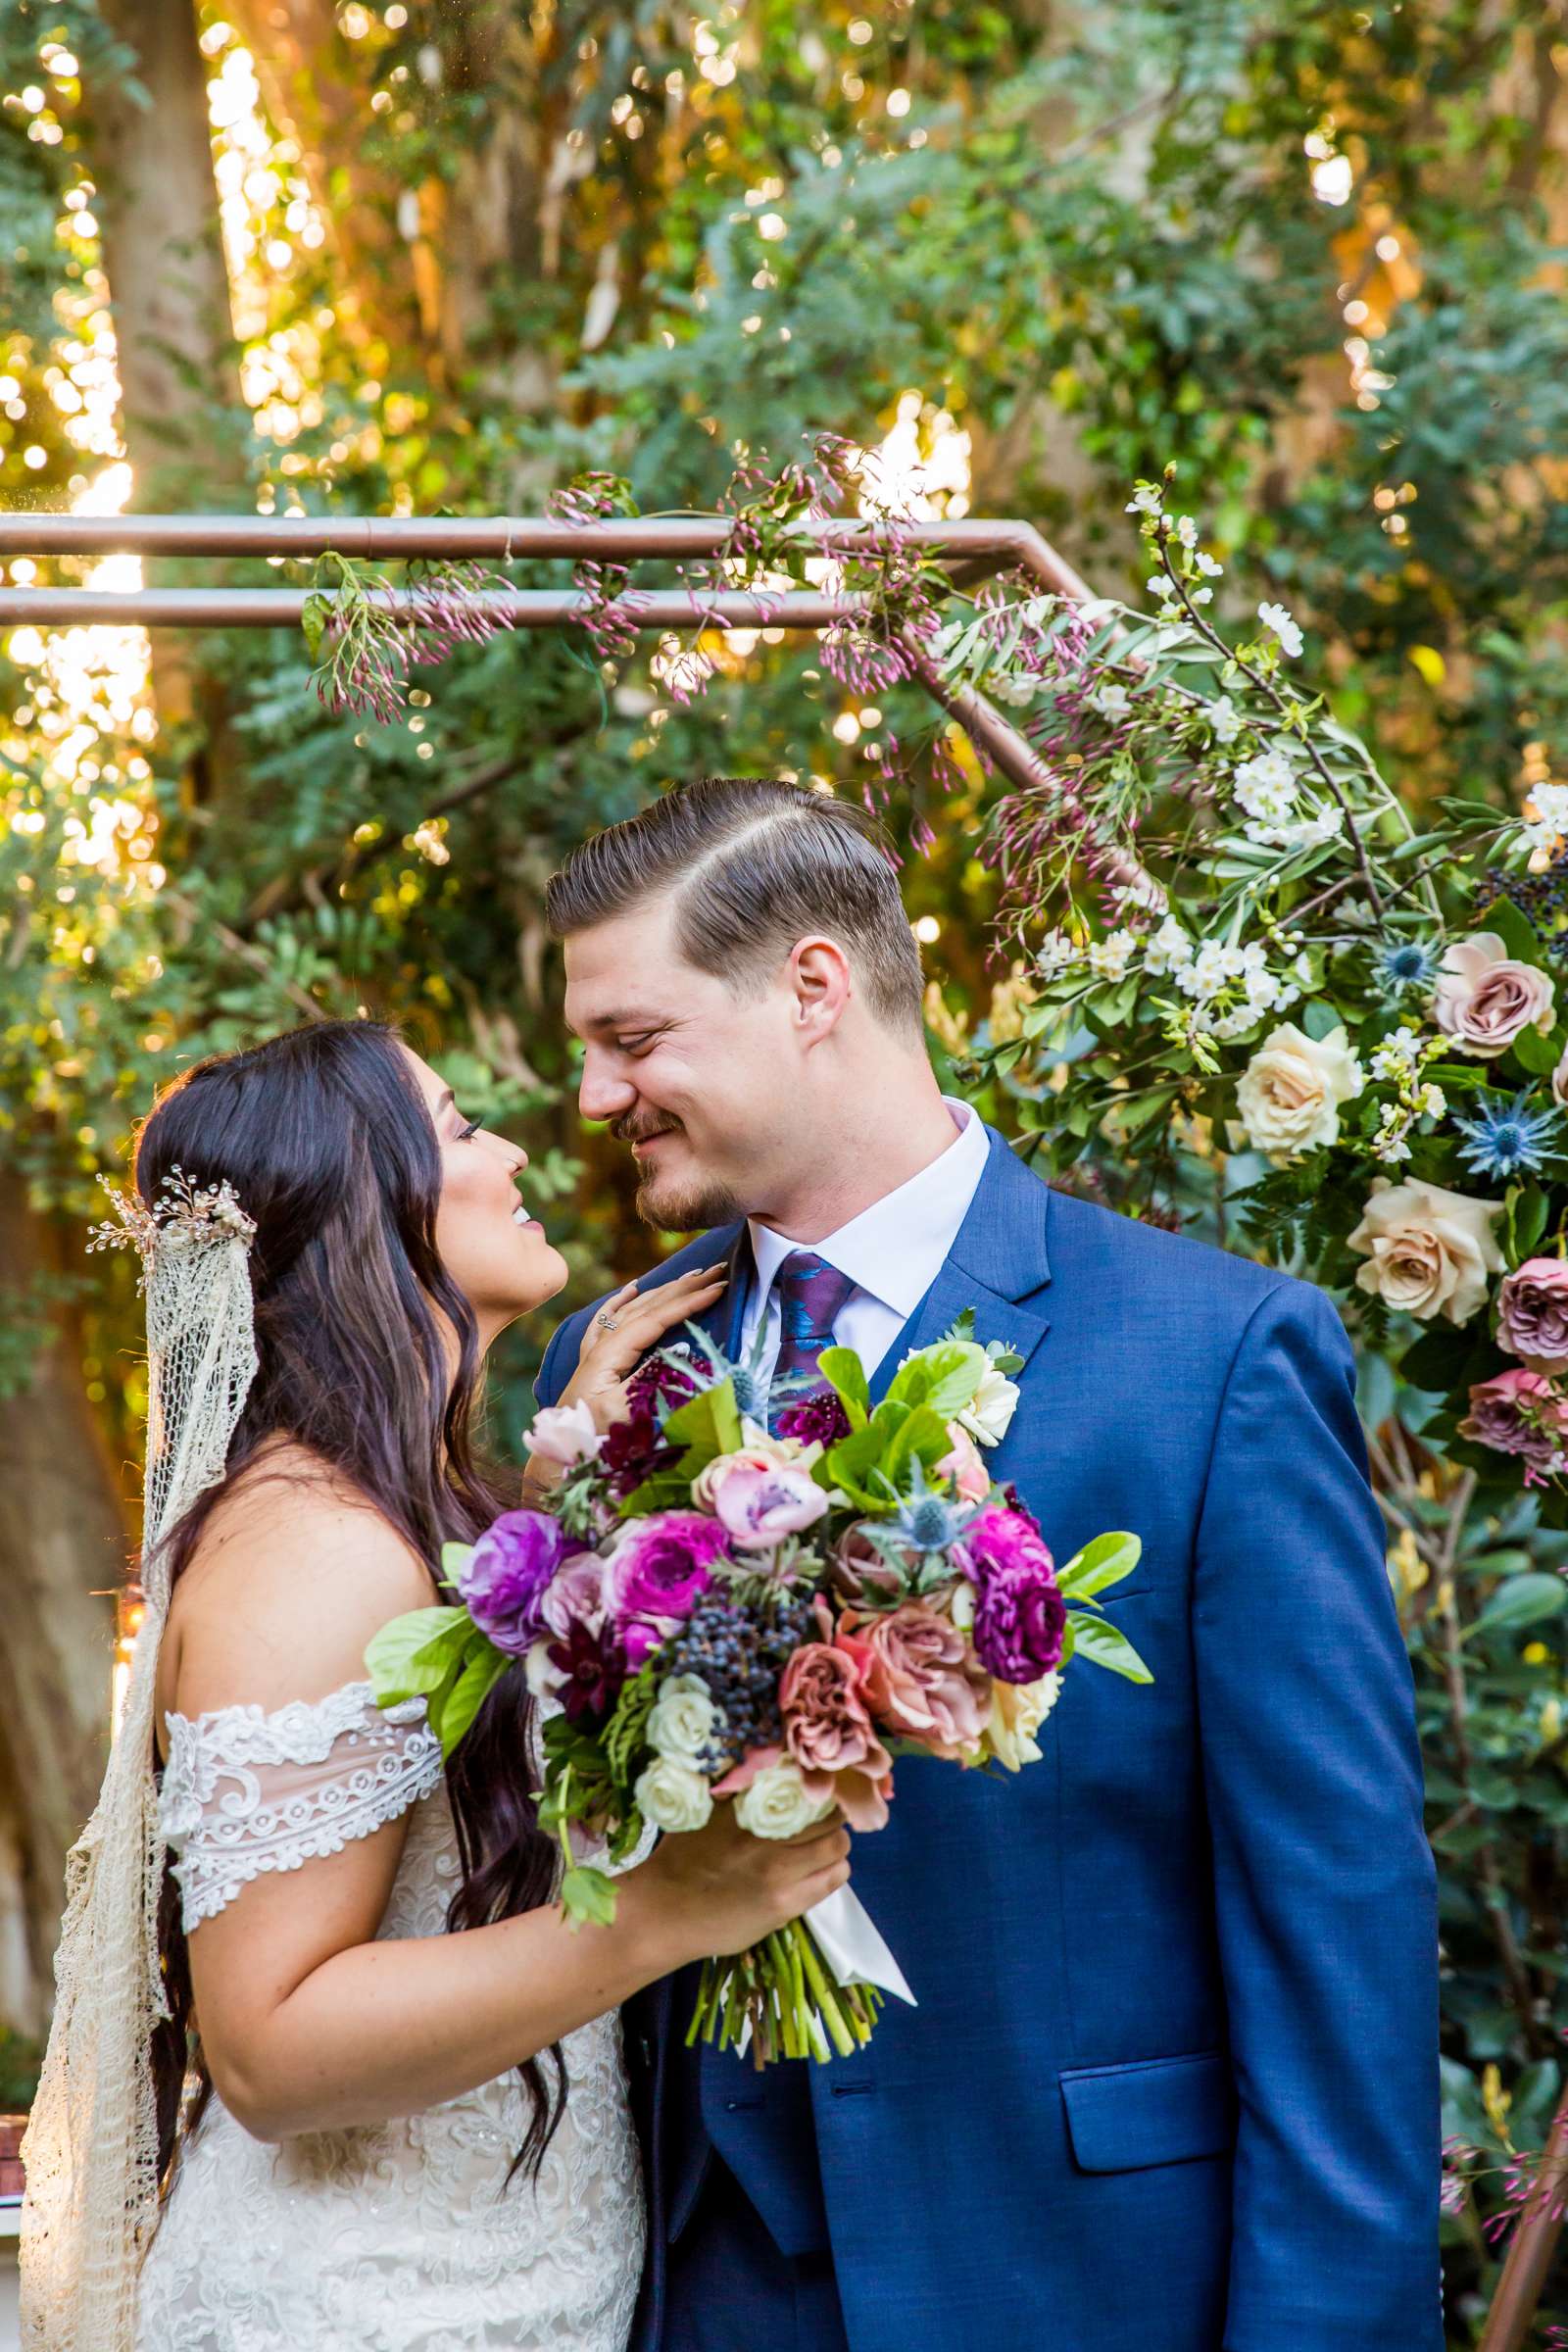 Twin Oaks House & Gardens Wedding Estate Wedding, Stephanie and Ilija Wedding Photo #21 by True Photography